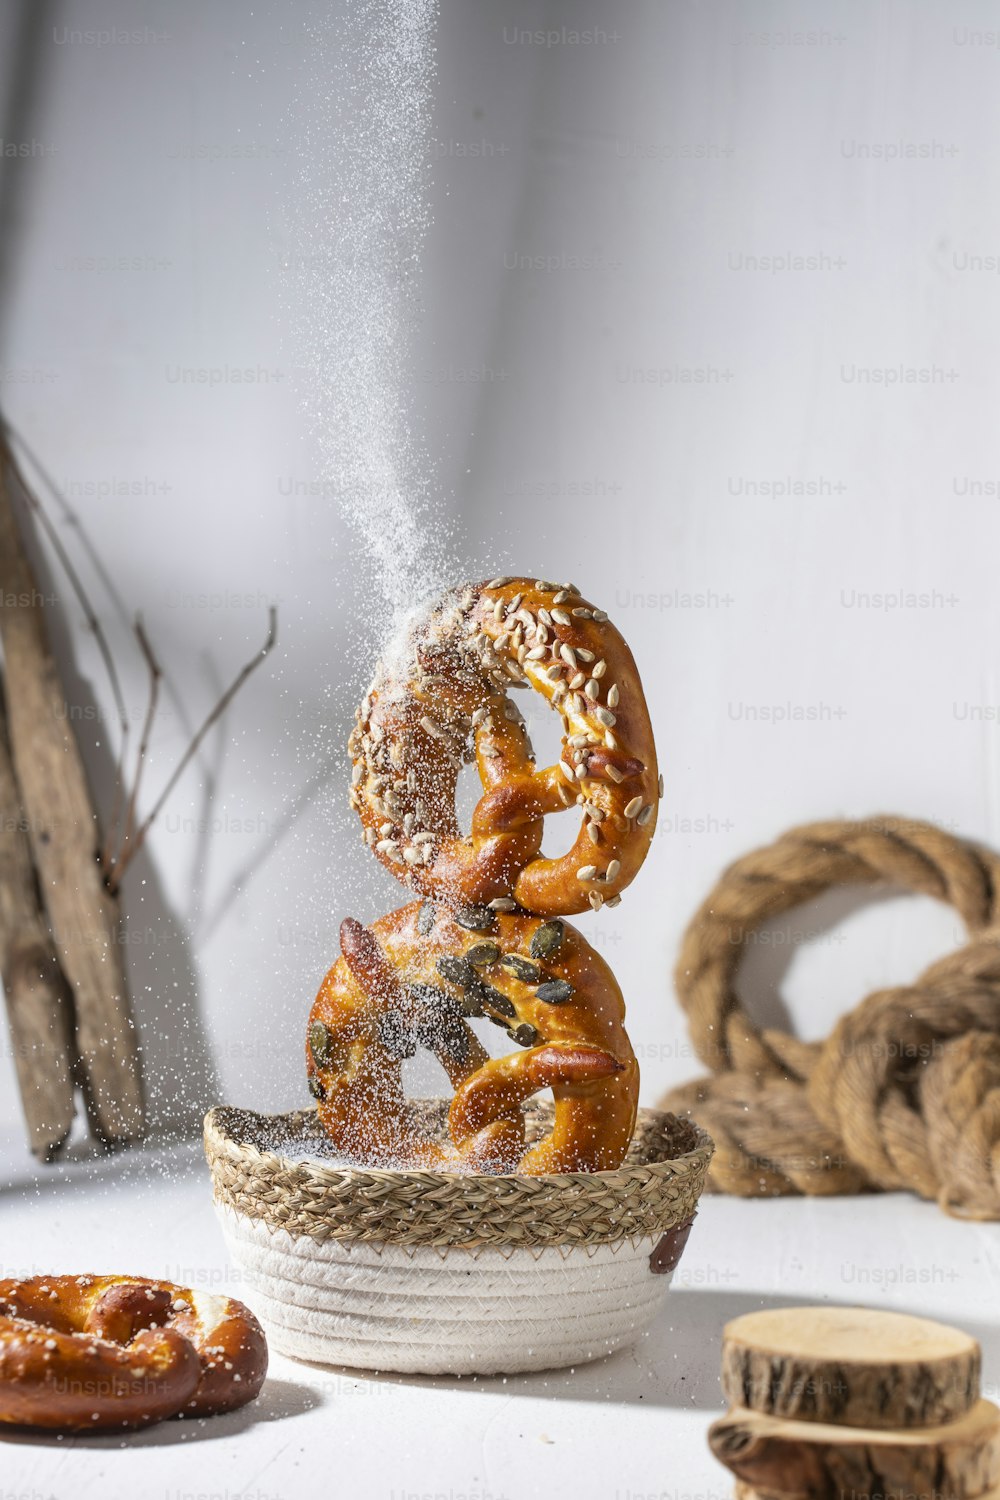 a stack of pretzels sprinkled with sugar